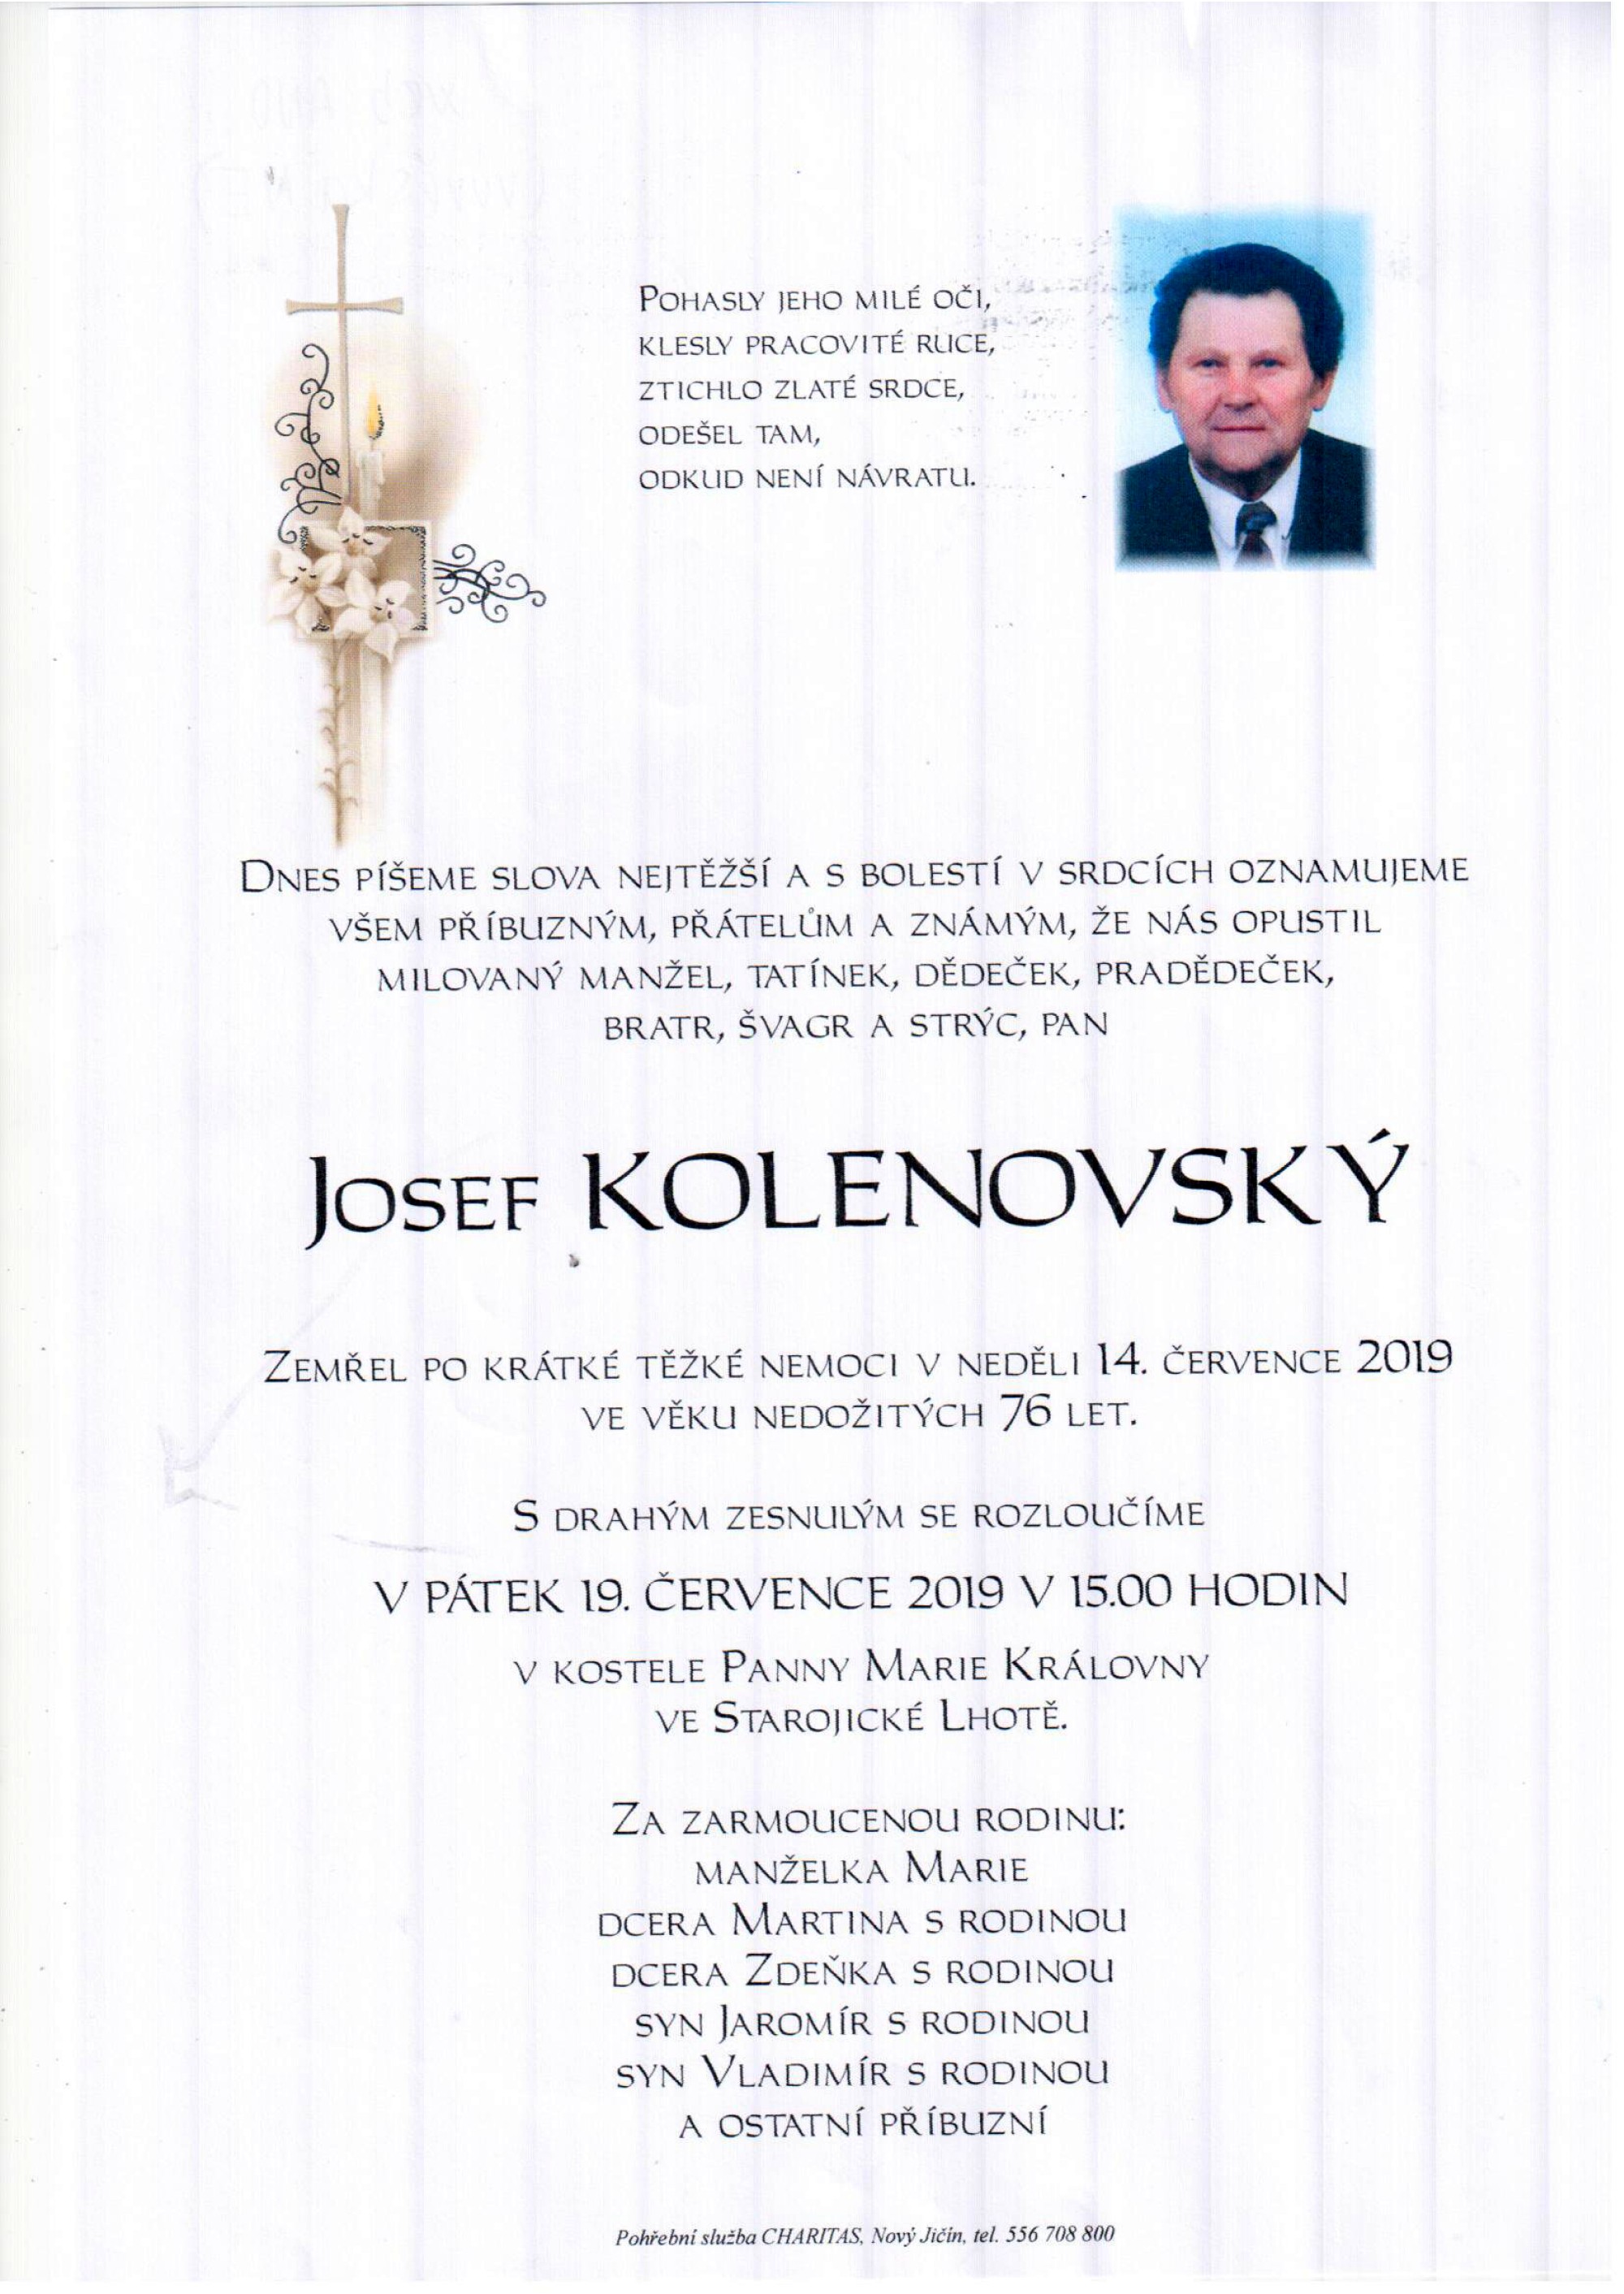 Josef Kolenovský